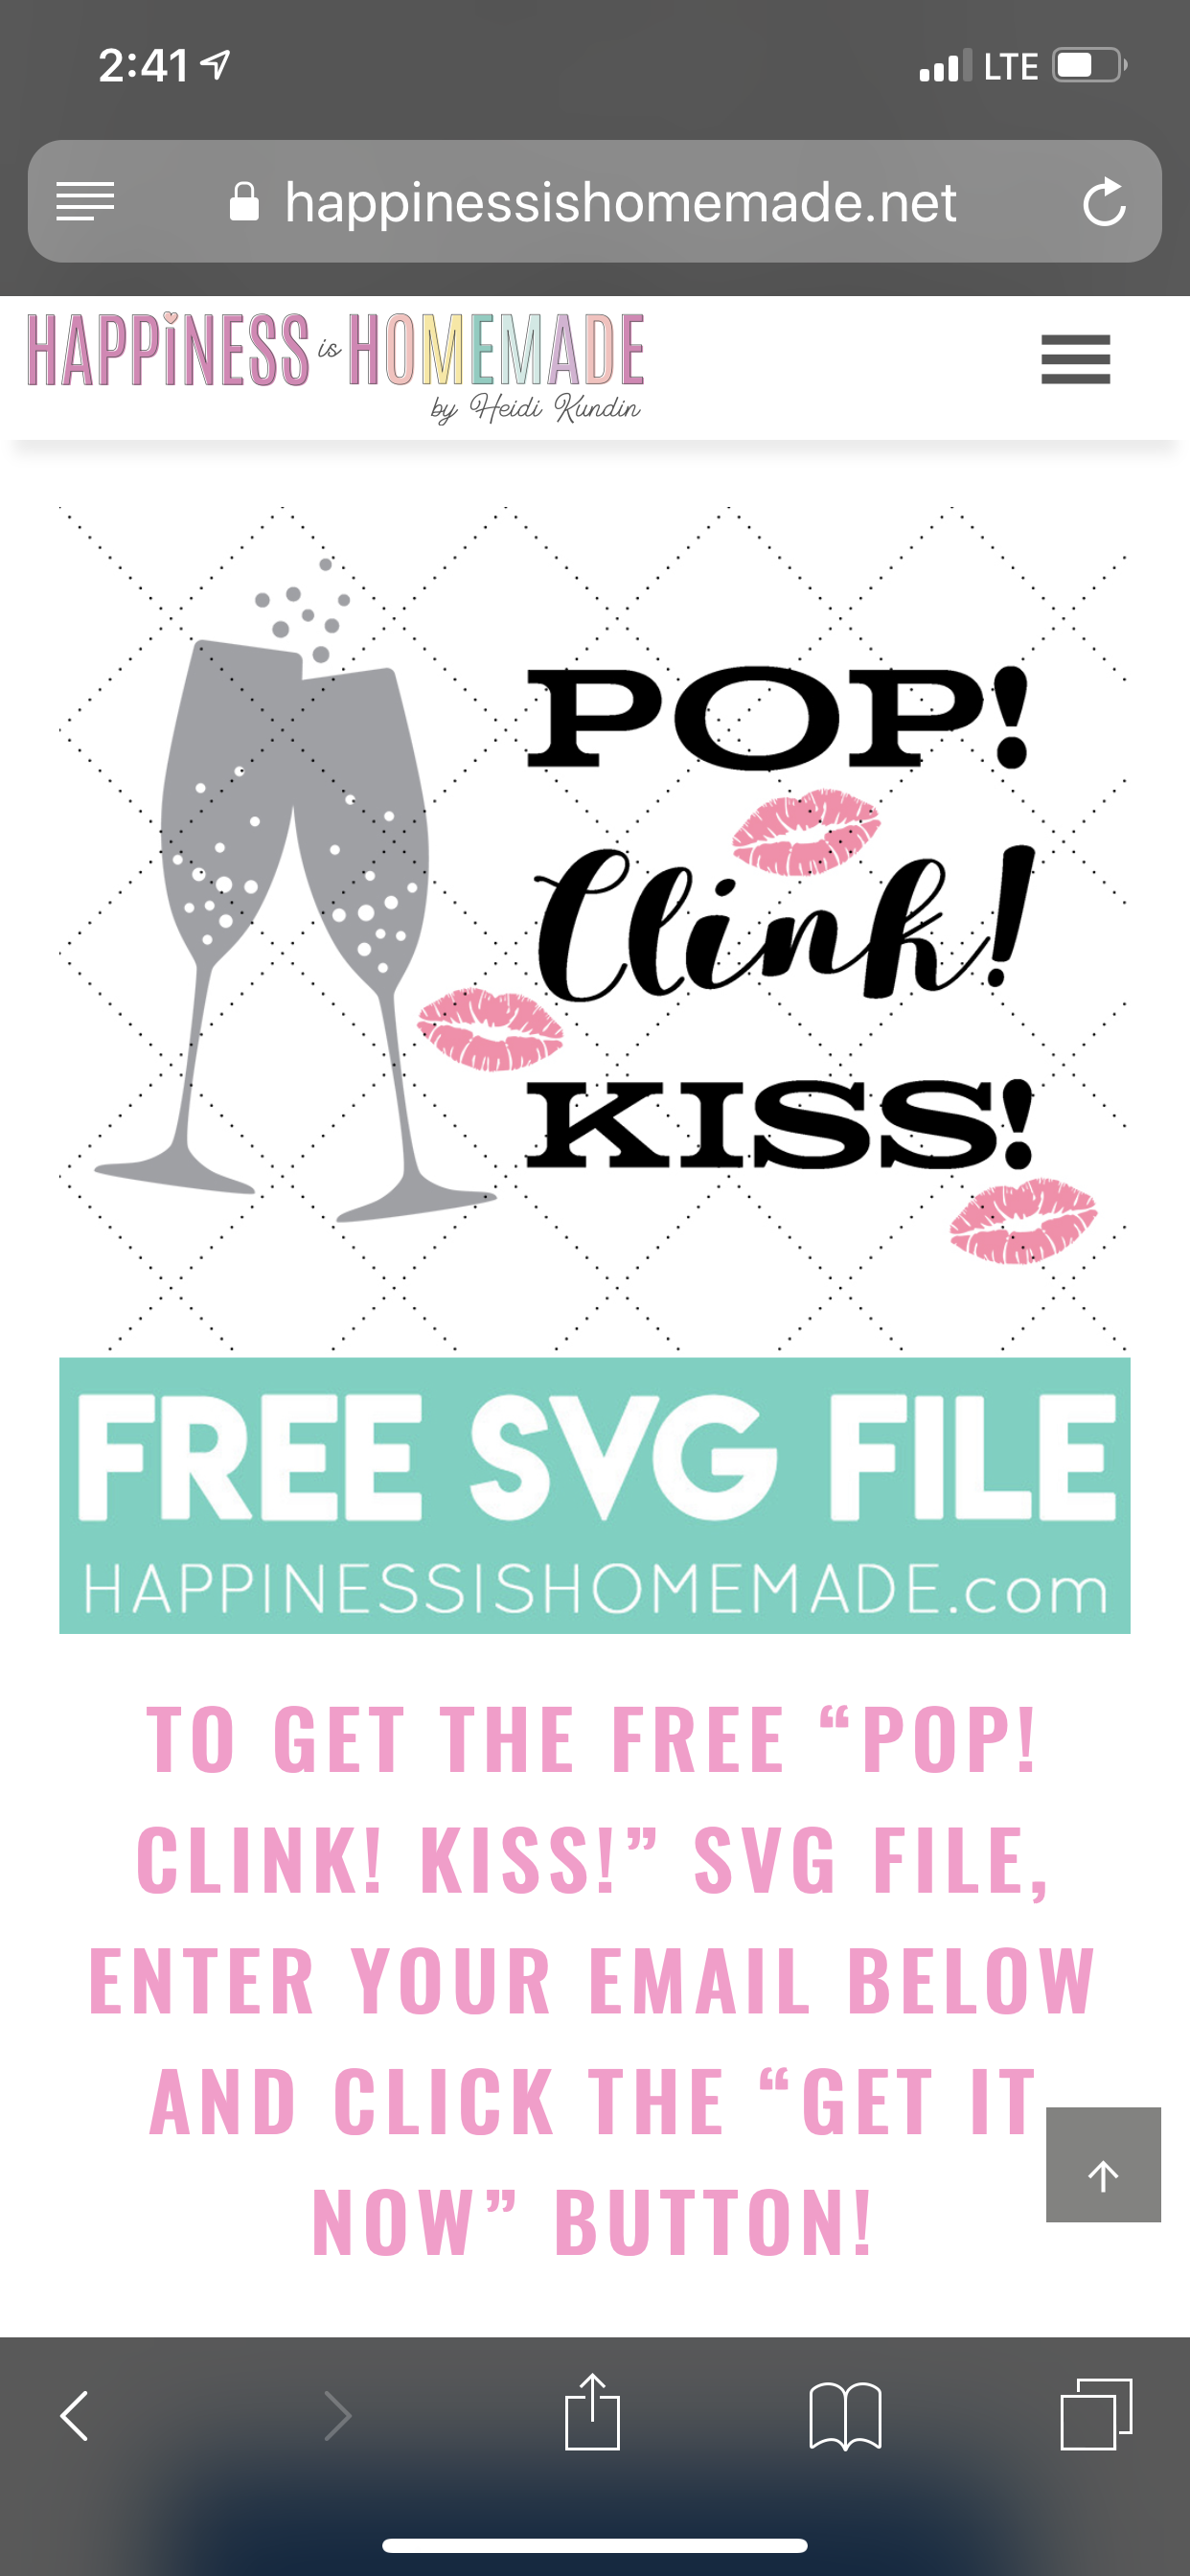 pop clink kiss svg file offer